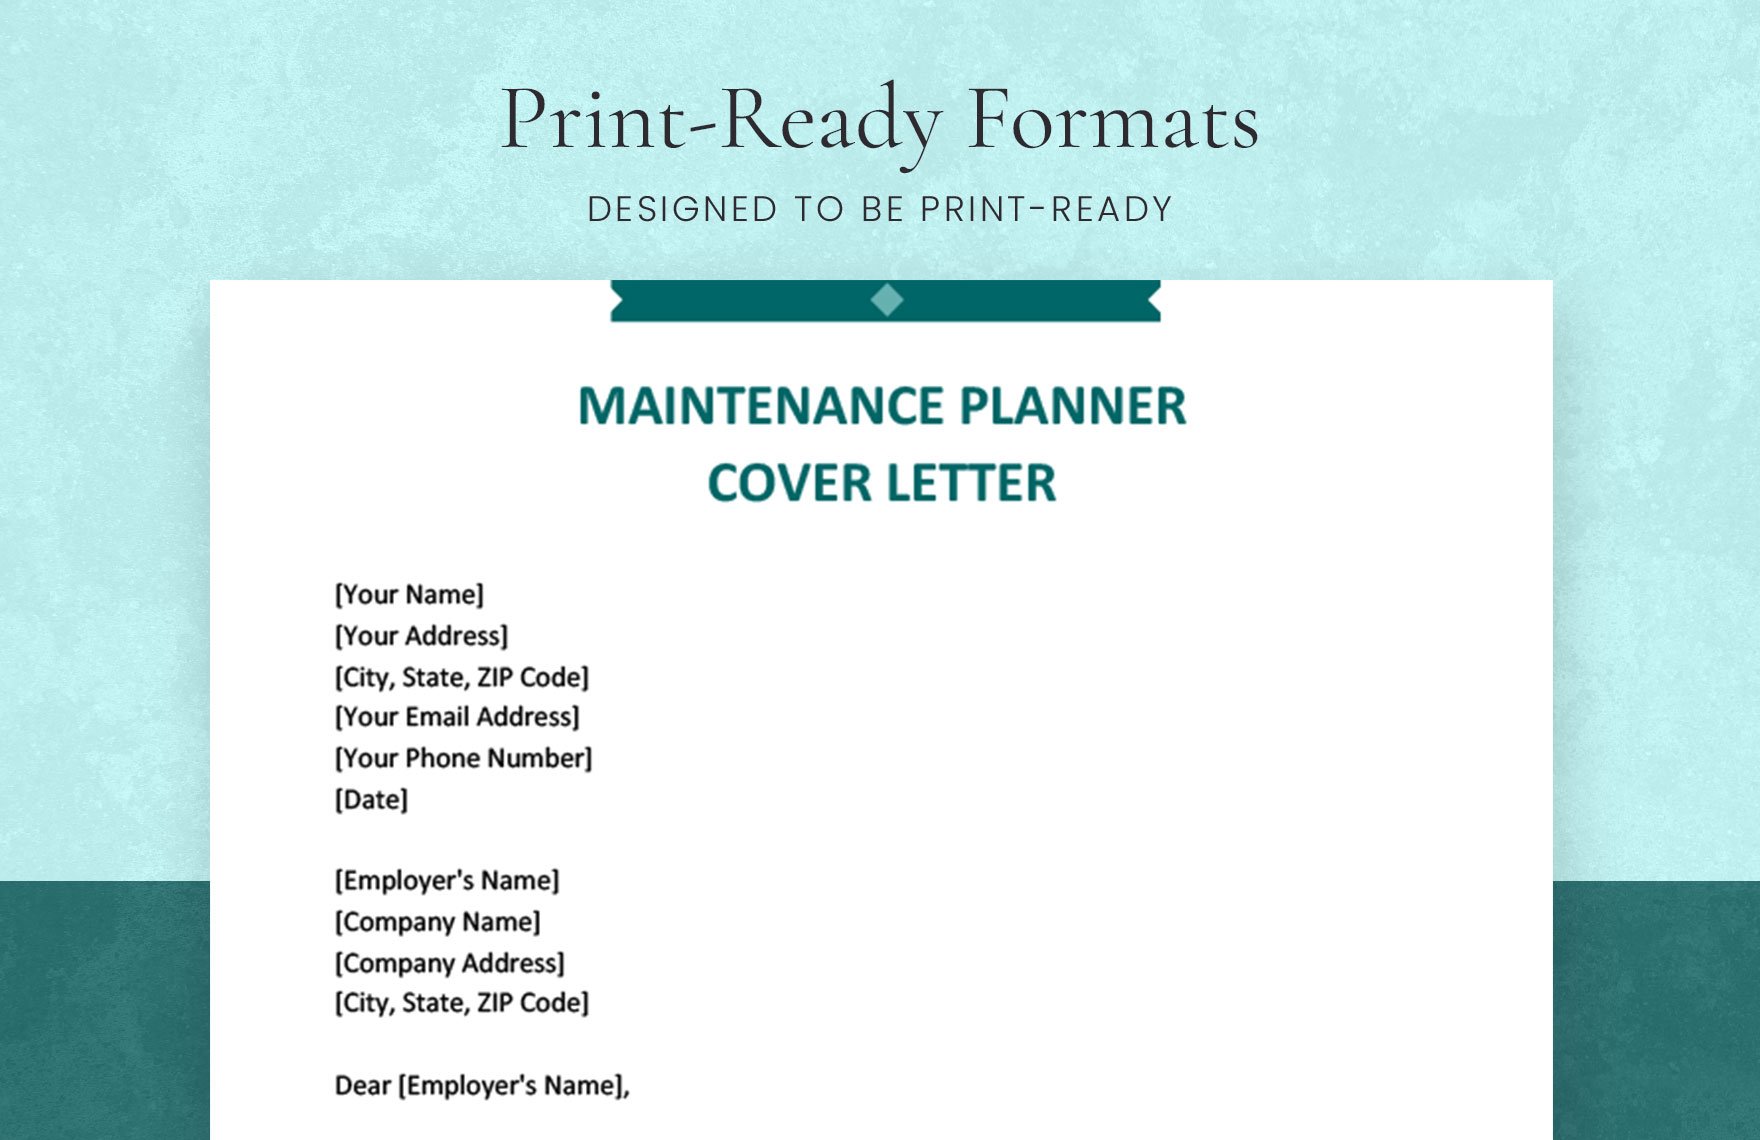 Maintenance Planner Cover Letter